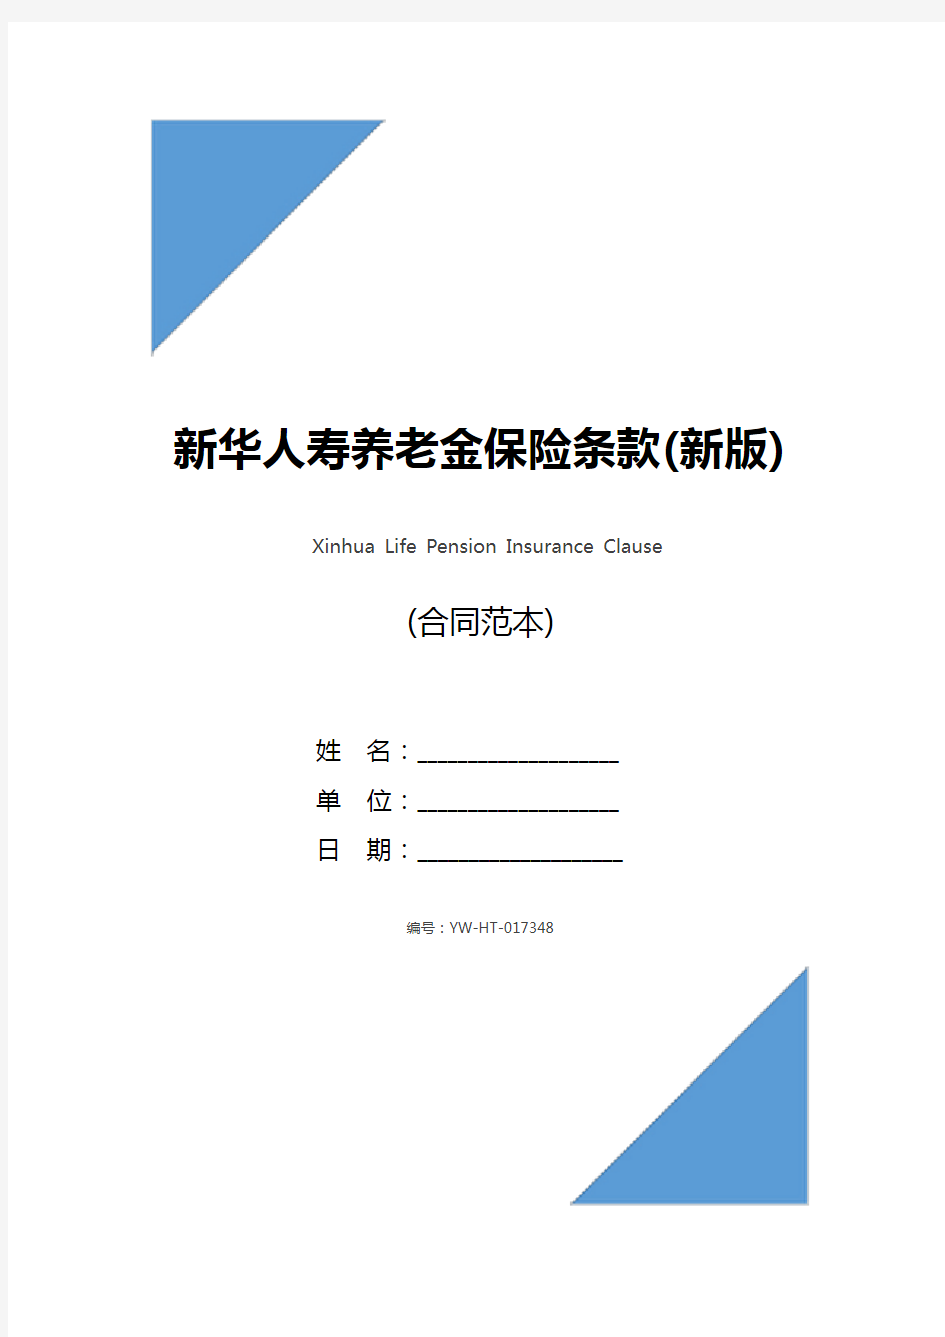 新华人寿养老金保险条款(新版)